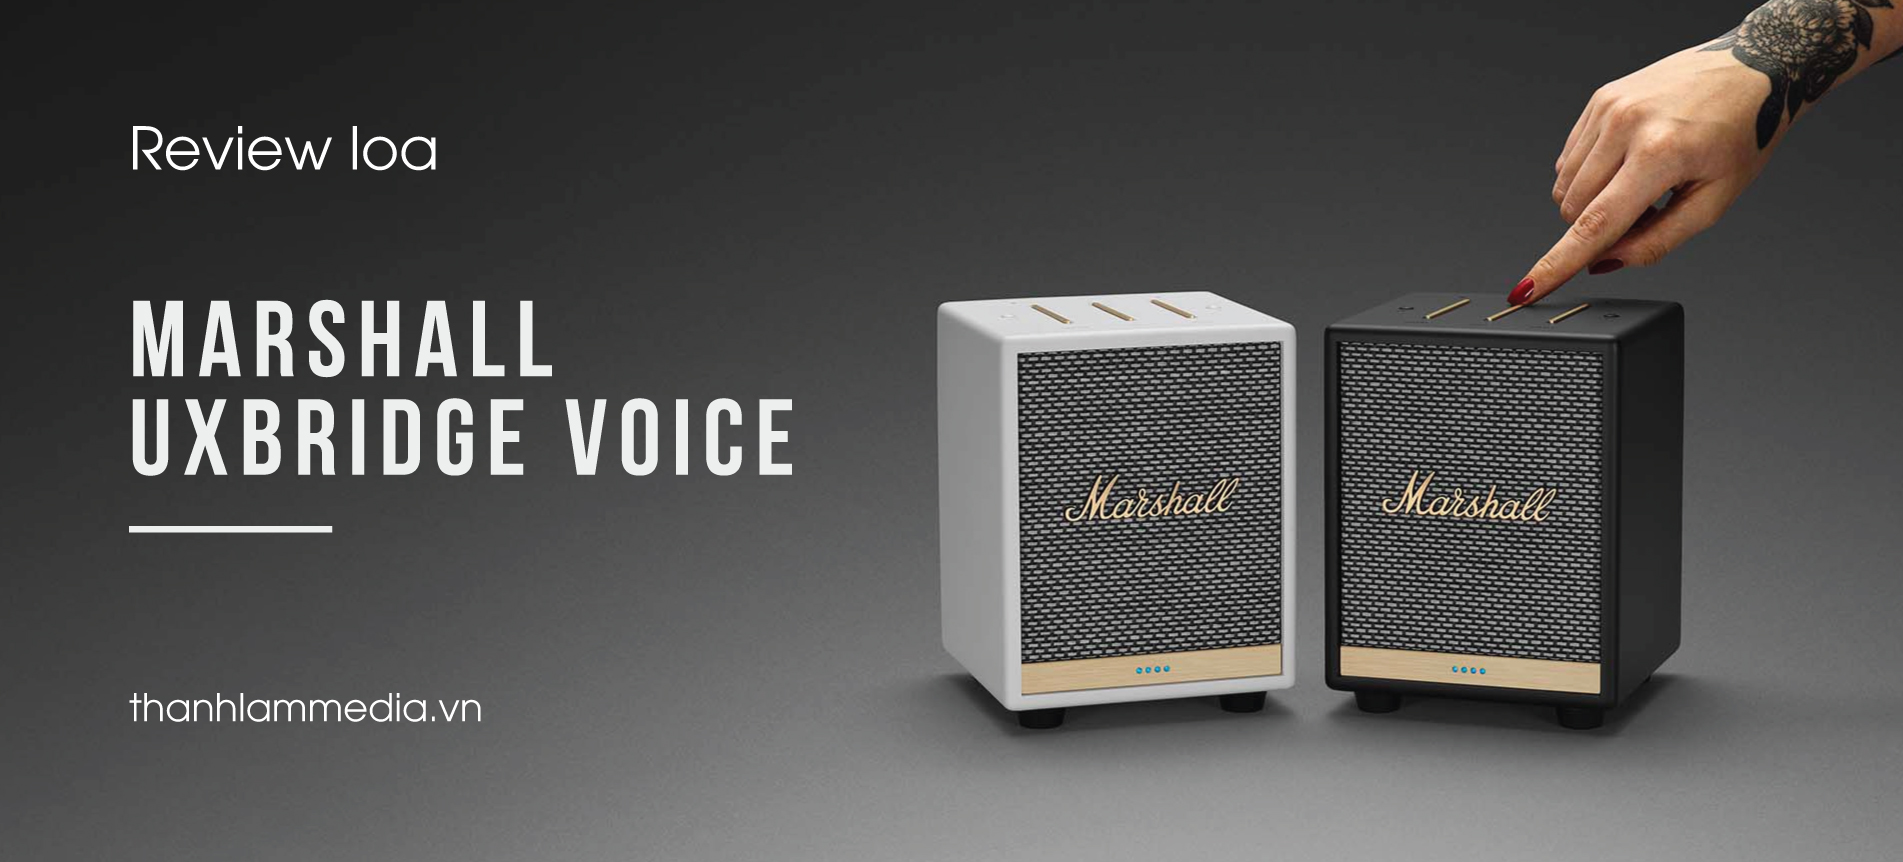 Review loa Marshall Uxbridge Voice - siêu nhỏ gọn, phong cách cực khác biệt 2